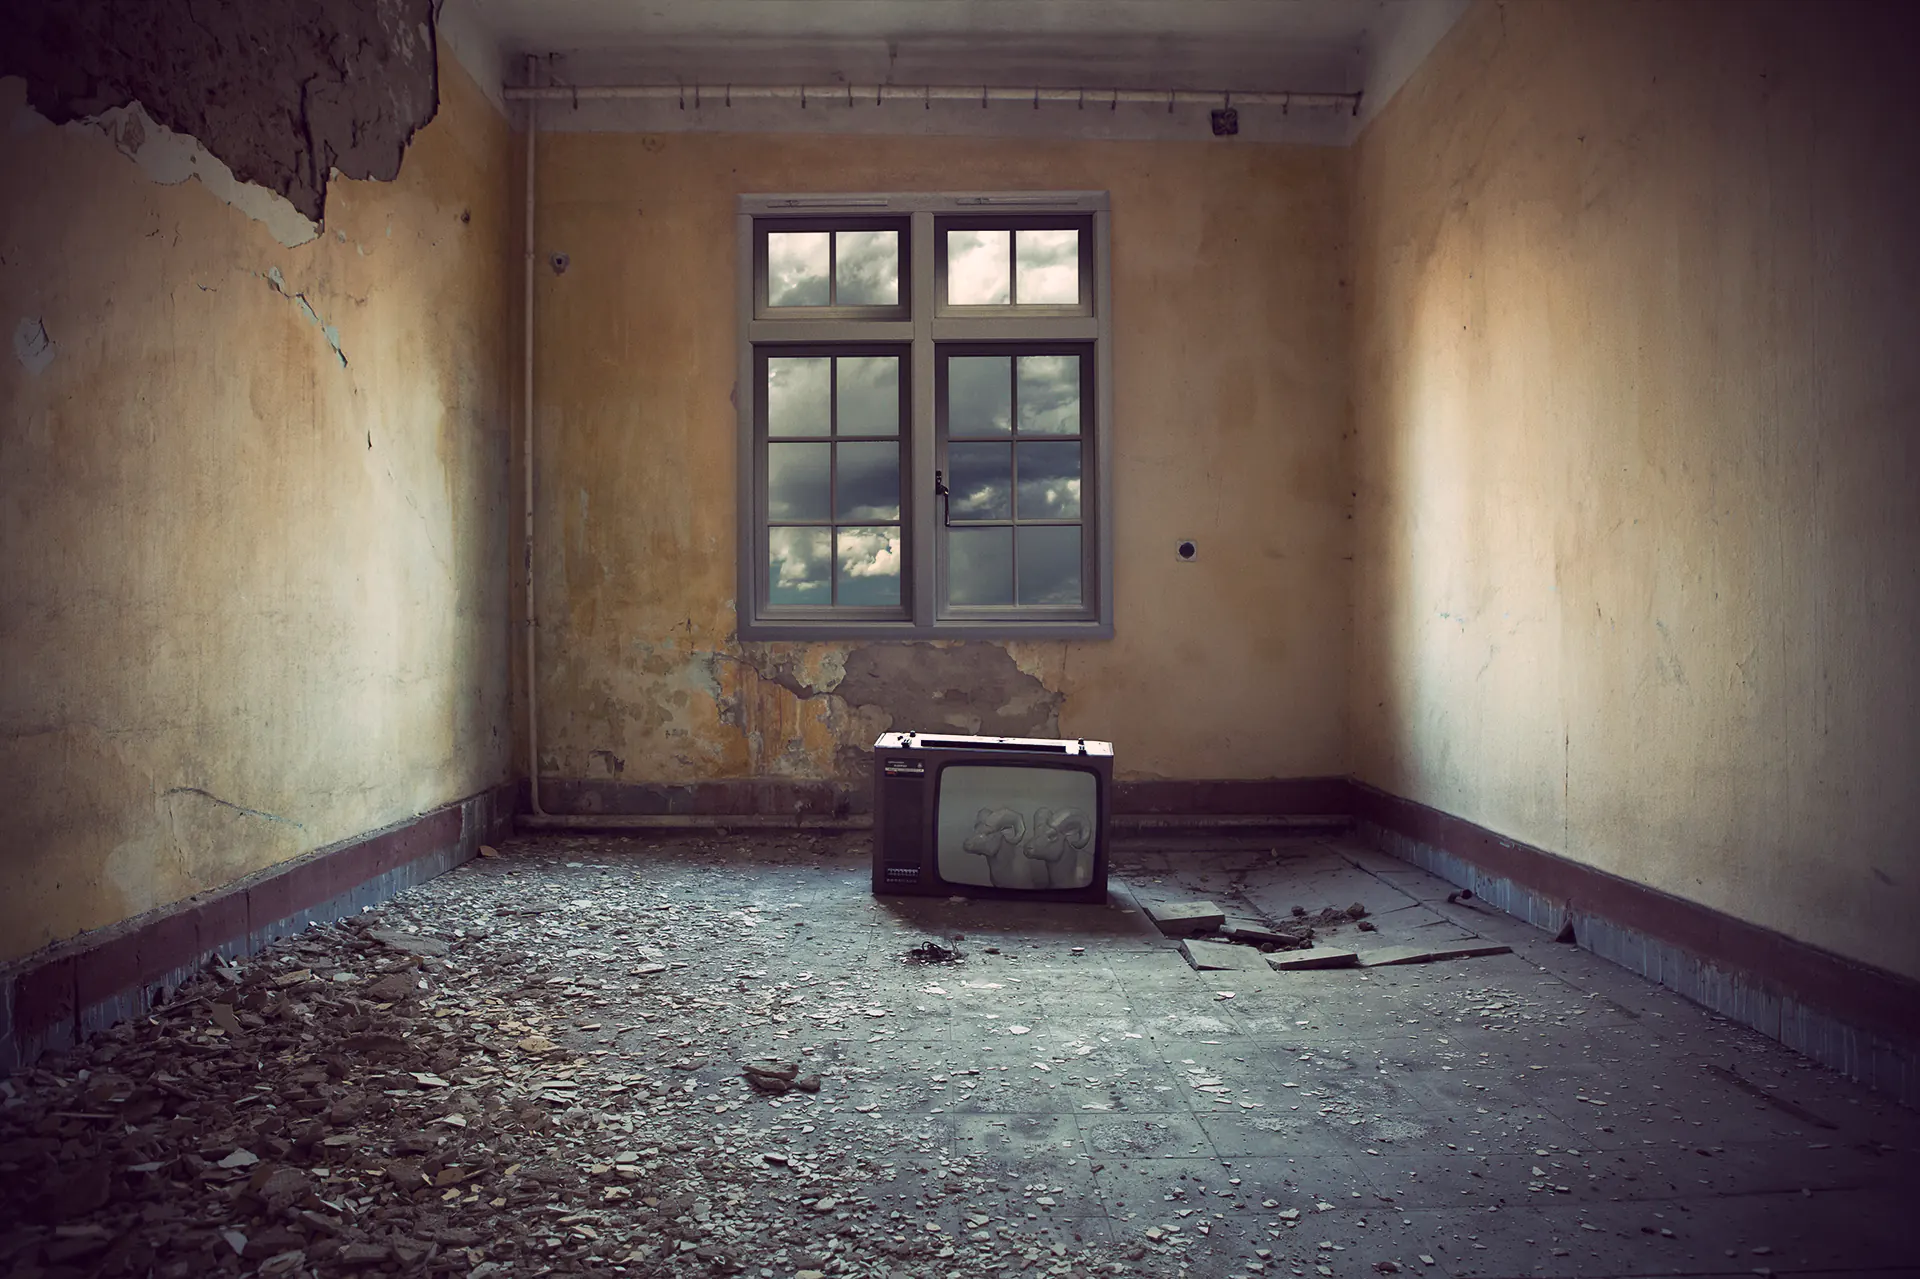 Televízió egy üres, romos szobában. A képernyőn két poligonokból felépülő kos látható.